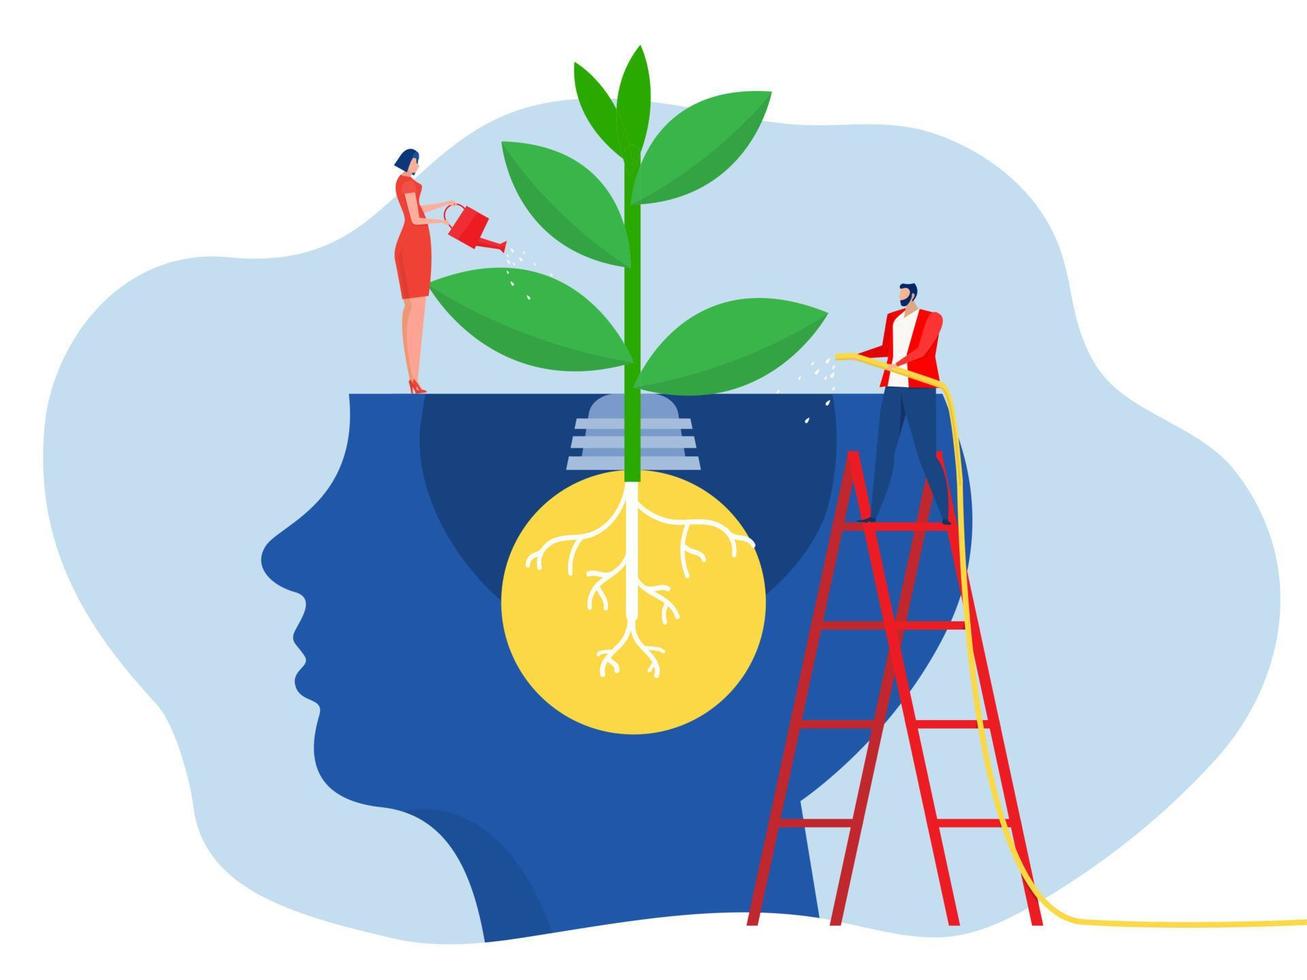 zakenvrouw gieter planten van de hersenen zetten denken groei manier van denken zelfverbetering en zelfverbetering ideeën concept vector